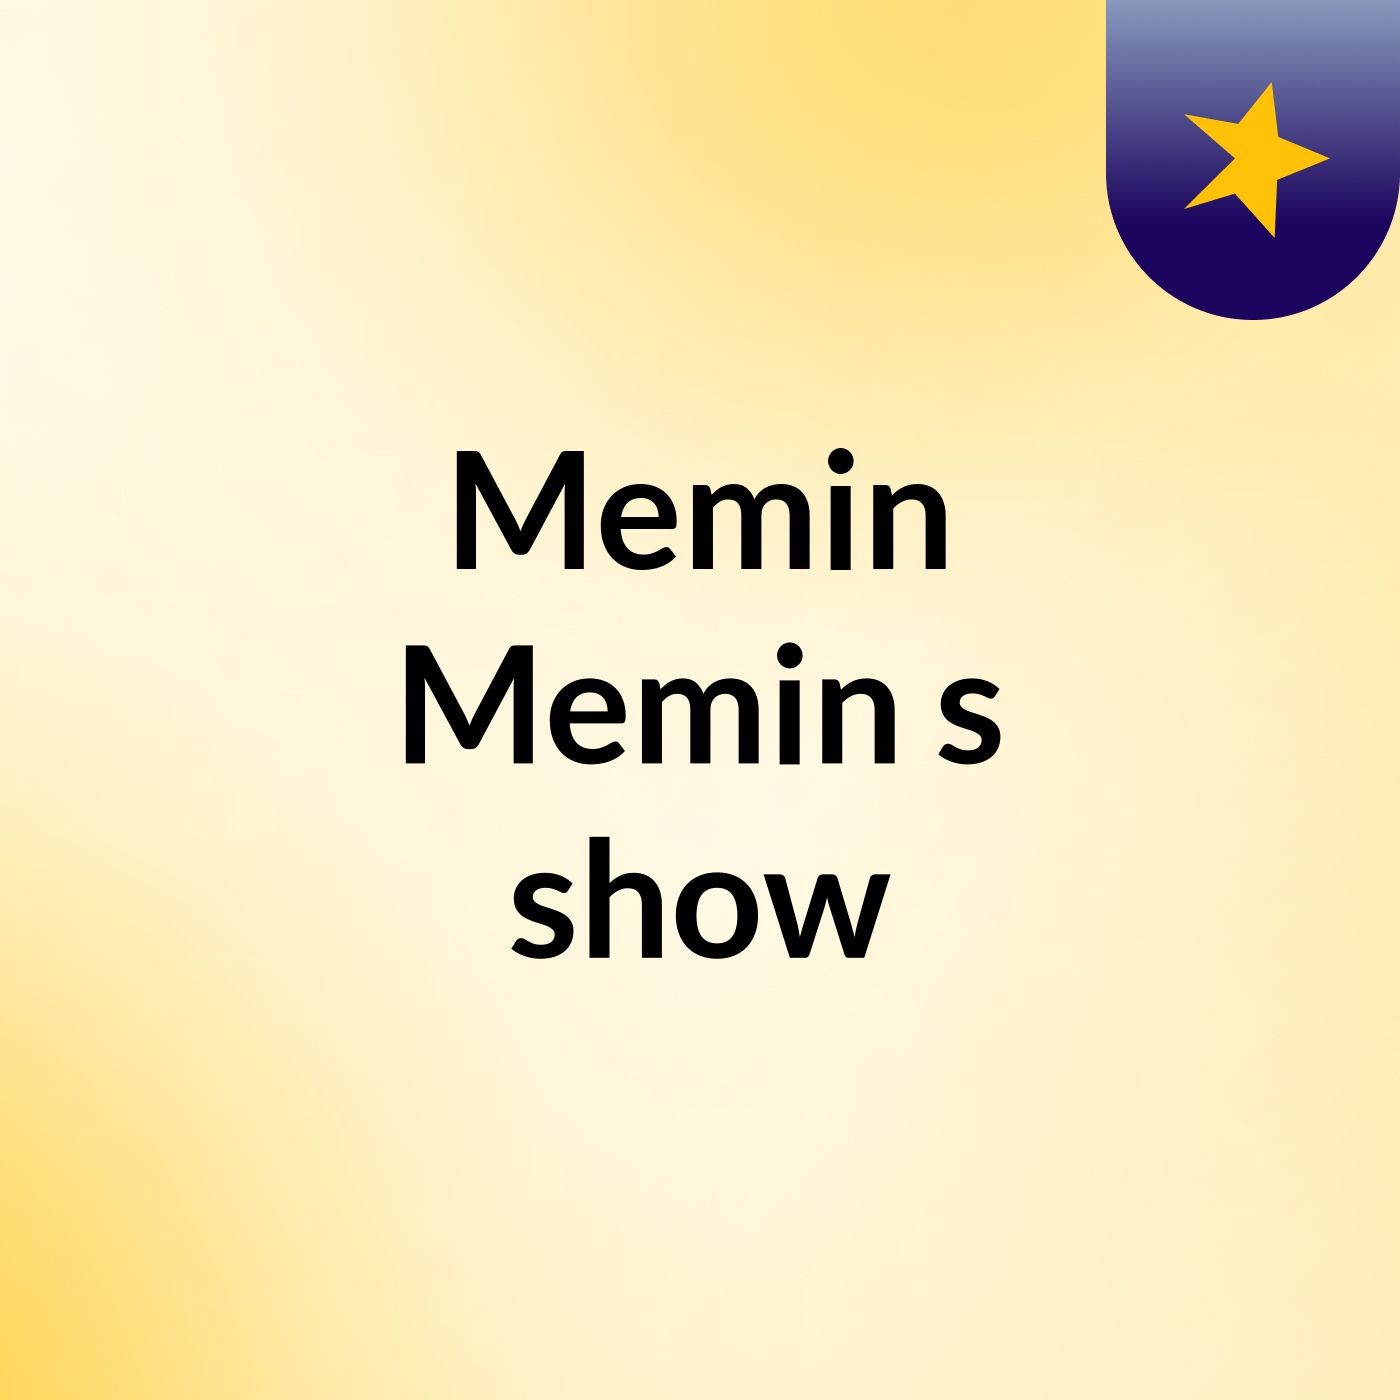 Memin Memin's show